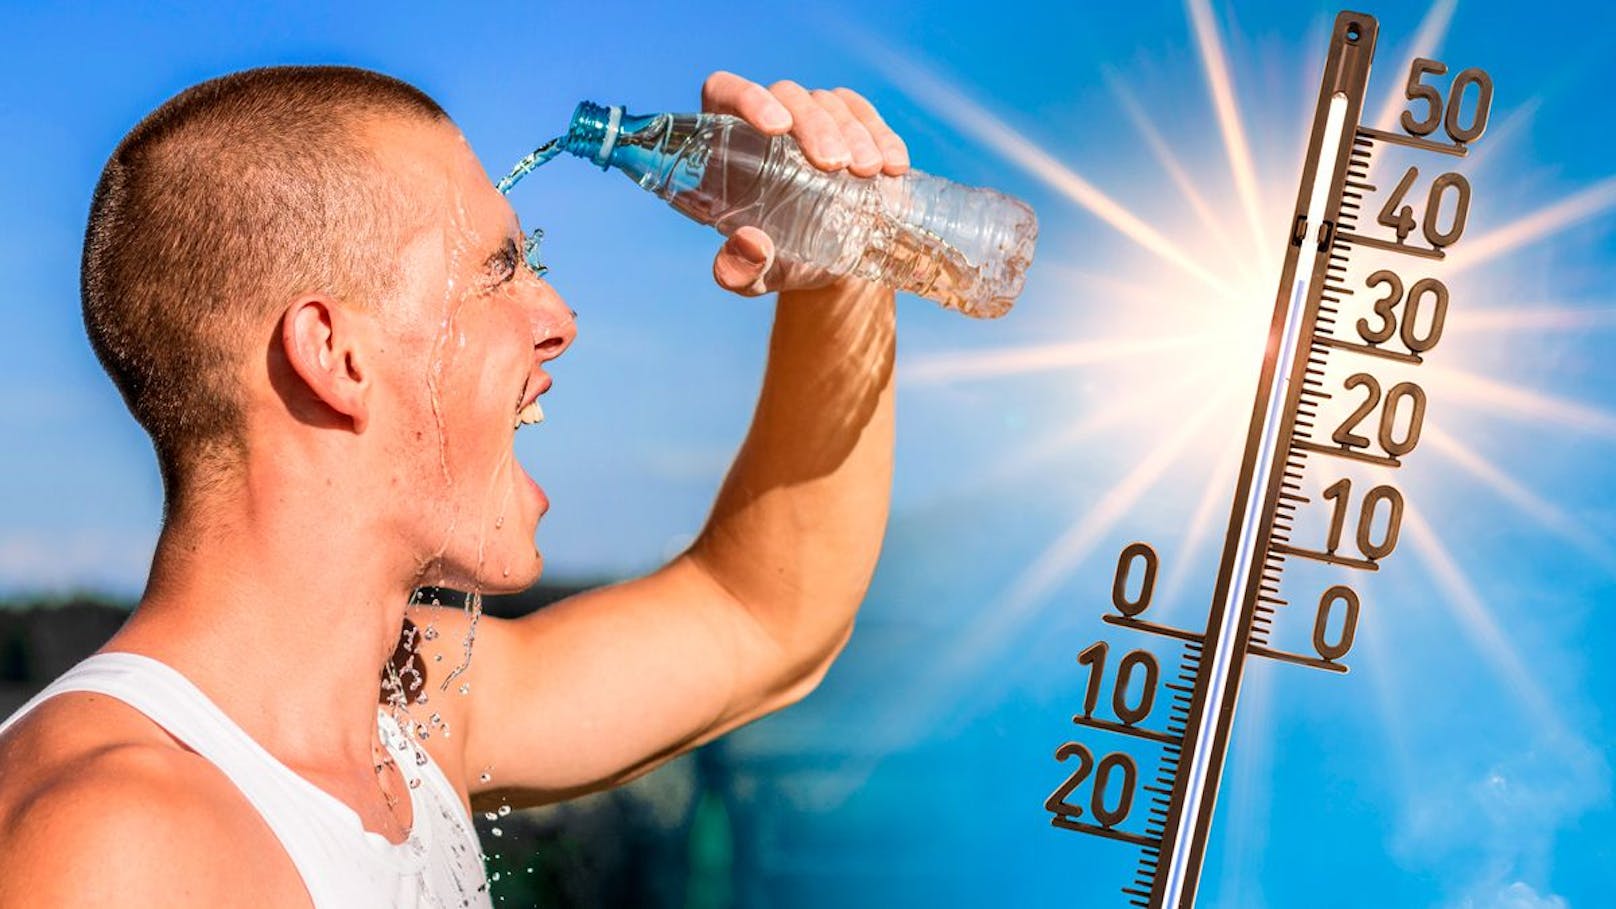 Viel Wasser und Abkühlung sind bei heißen Temperaturen wie derzeit wichtig. Wer Symptome hat, sollte so schnell wie möglich aus der Sonne gehen.